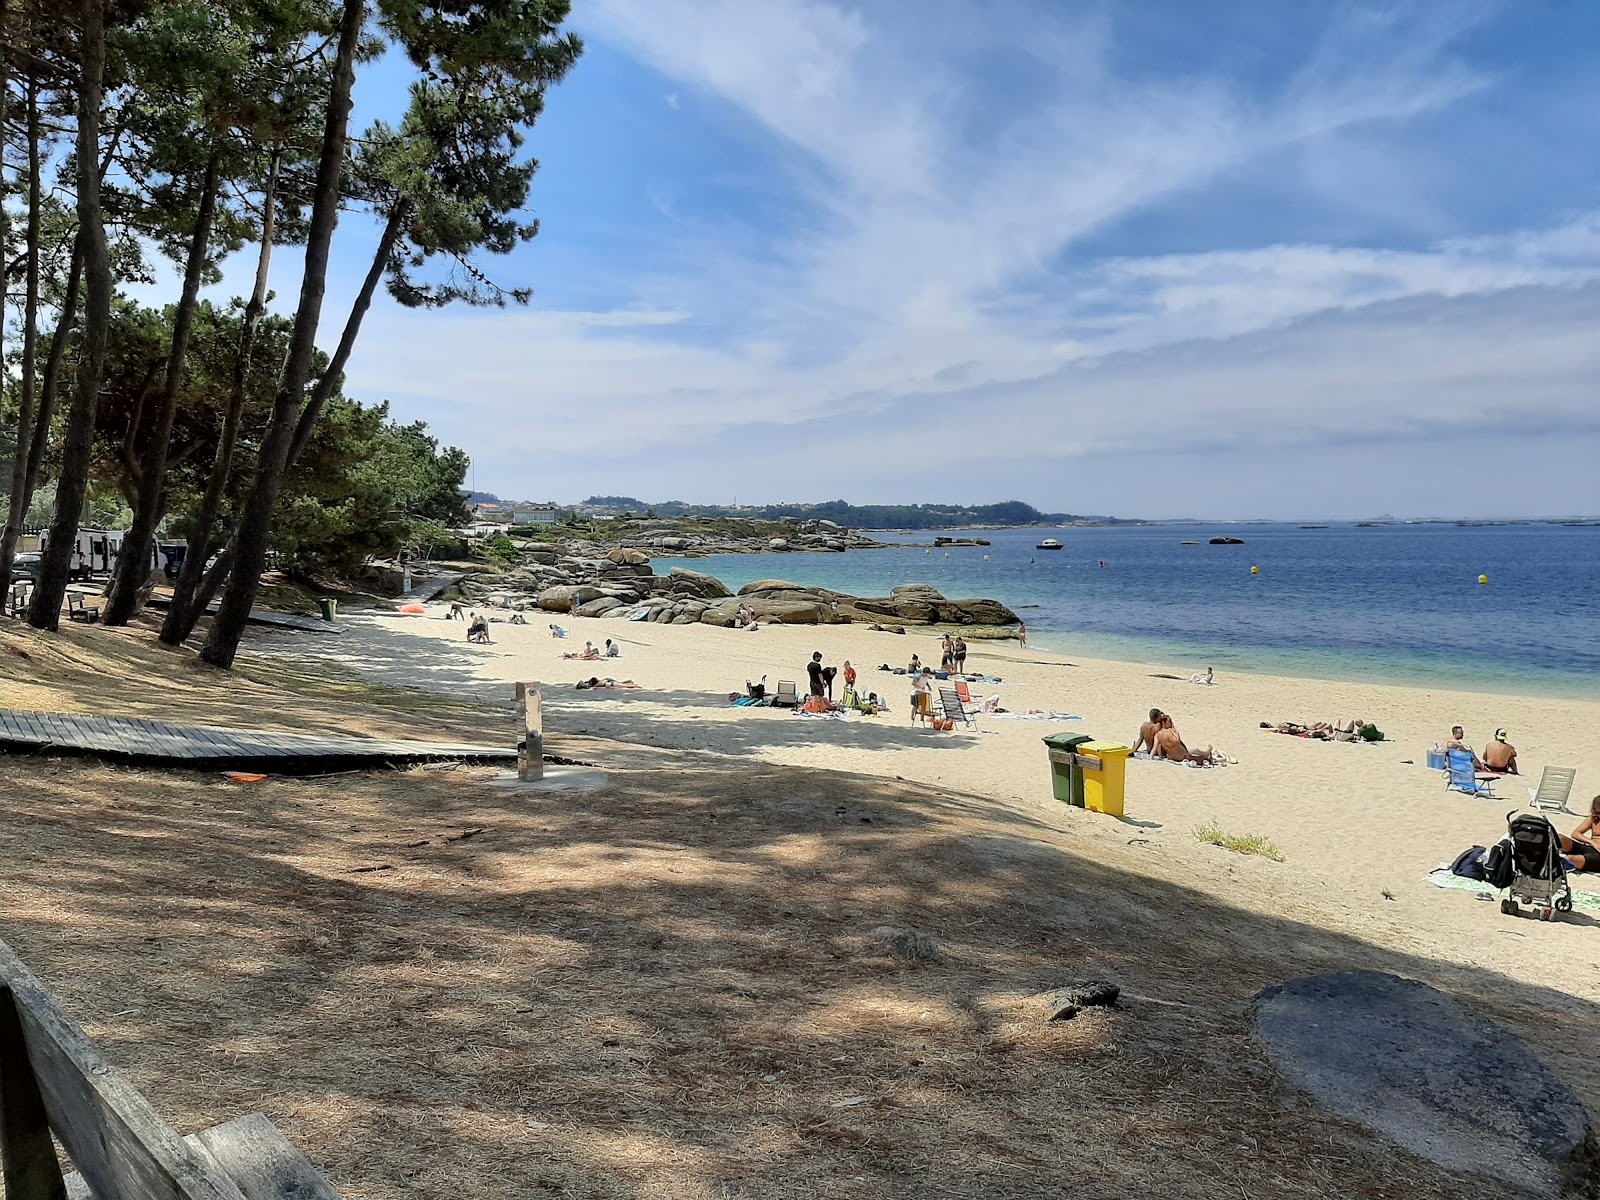 Fotografie cu Pipas beach - locul popular printre cunoscătorii de relaxare